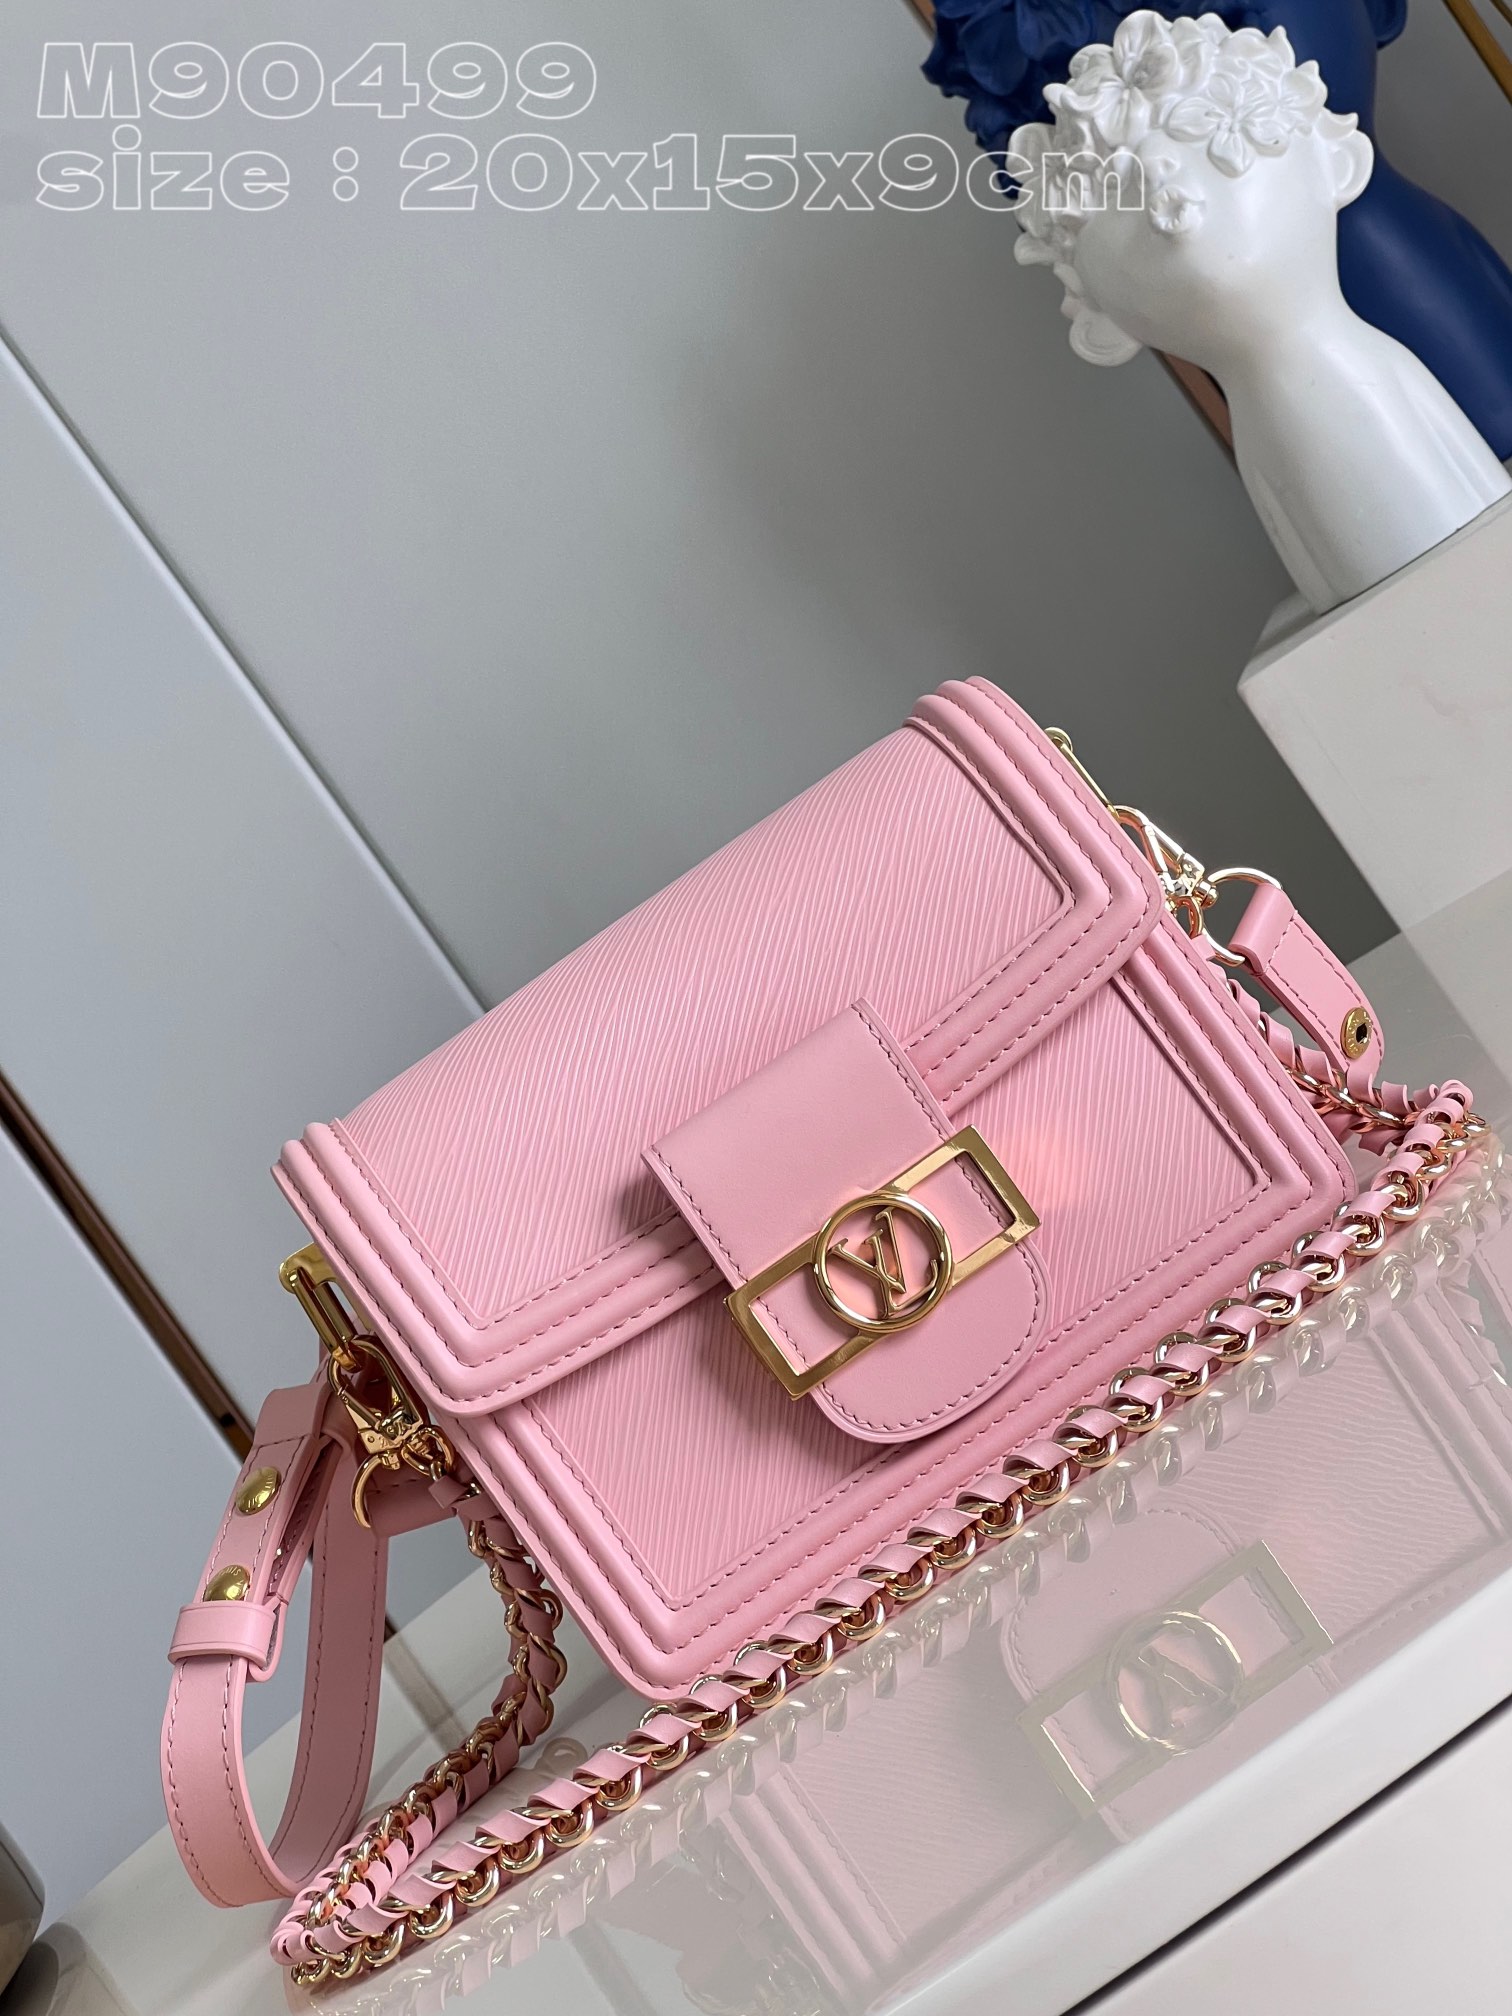 Cheap High Quality Replica
 Louis Vuitton LV Dauphine Bags Handbags Pink Weave Epi Cowhide Circle Chains M90499